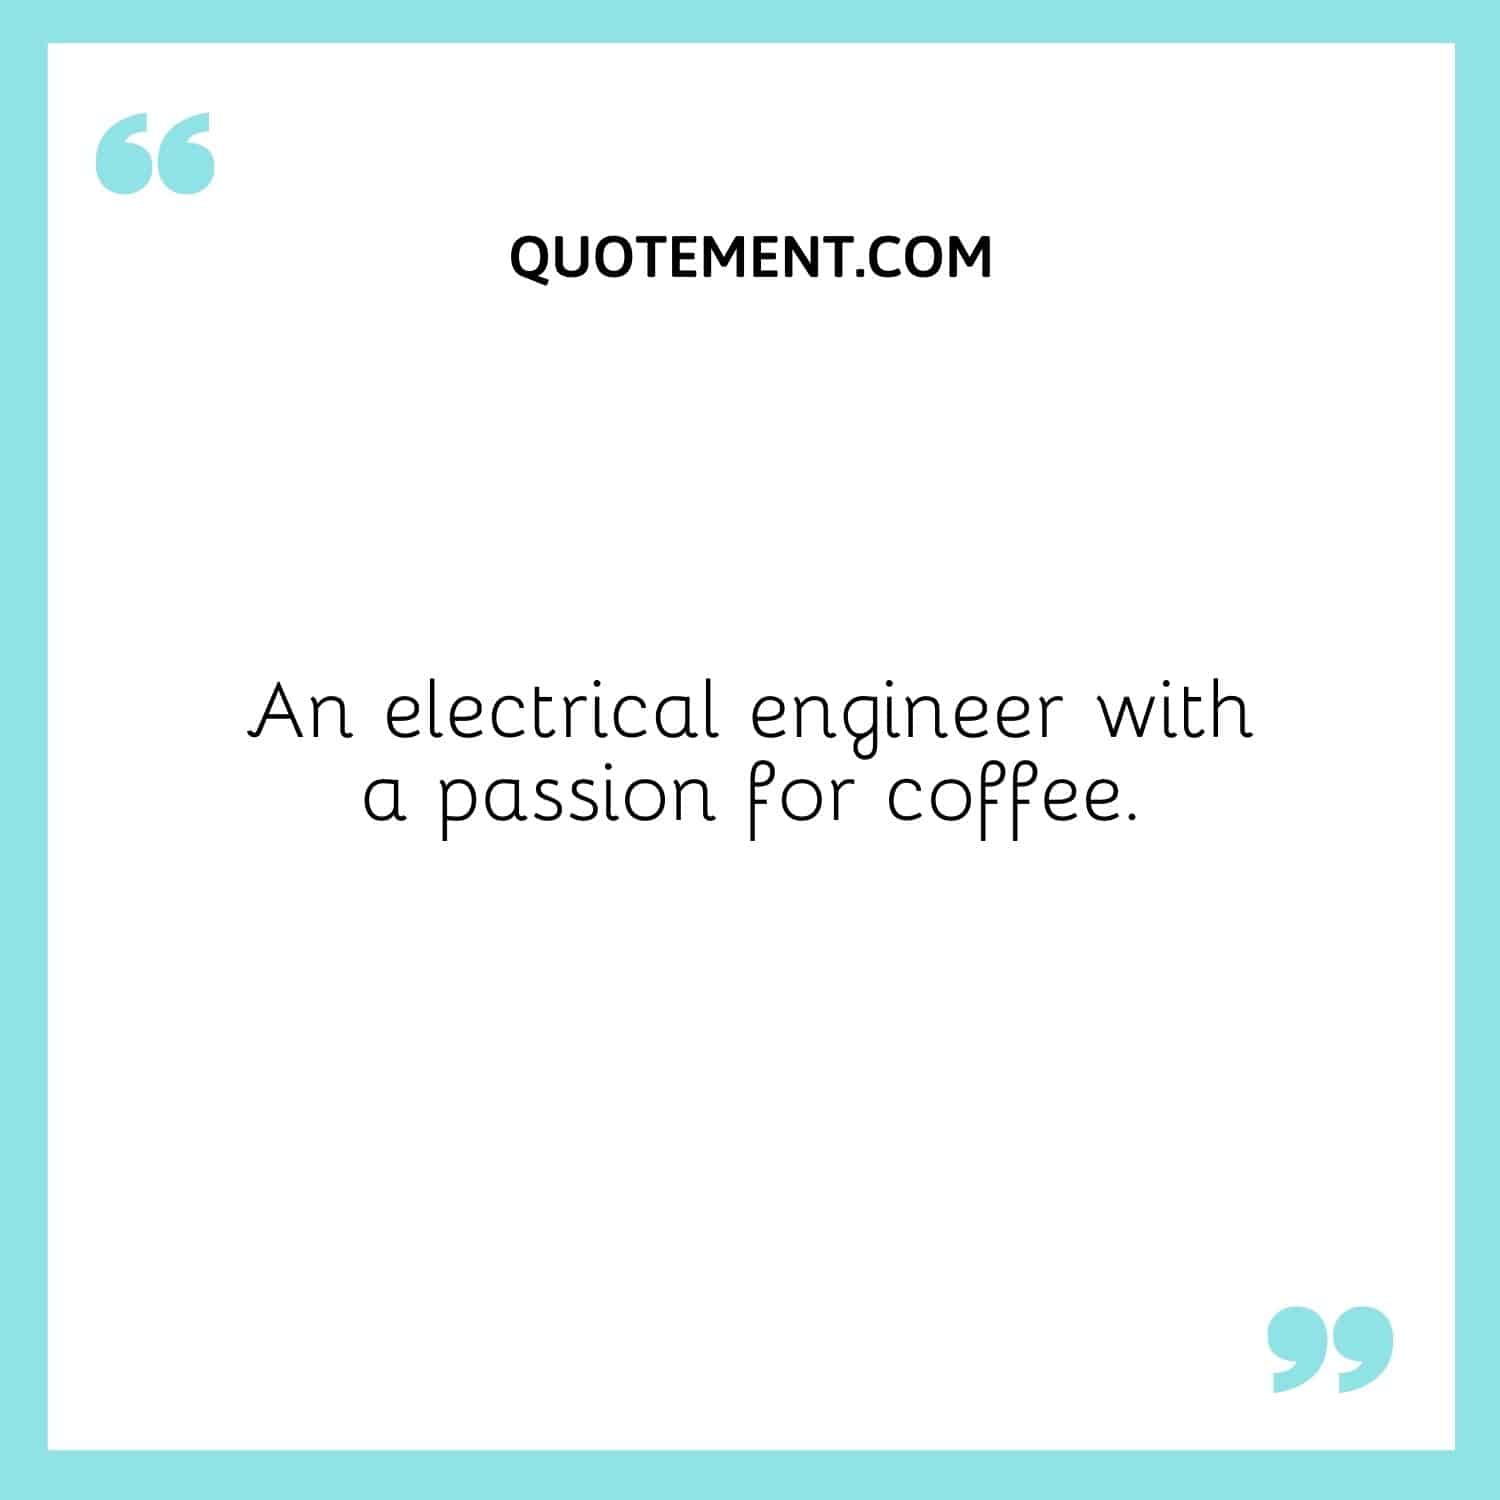 Un ingeniero eléctrico apasionado por el café.